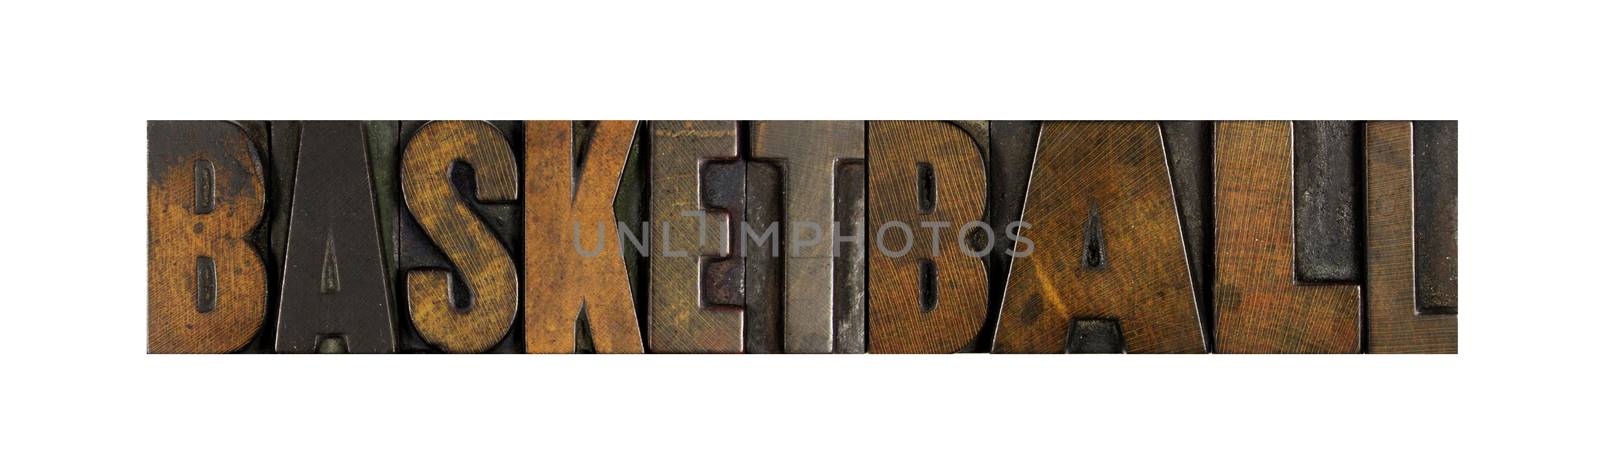 The word BASKETBALL written in vintage letterpress type